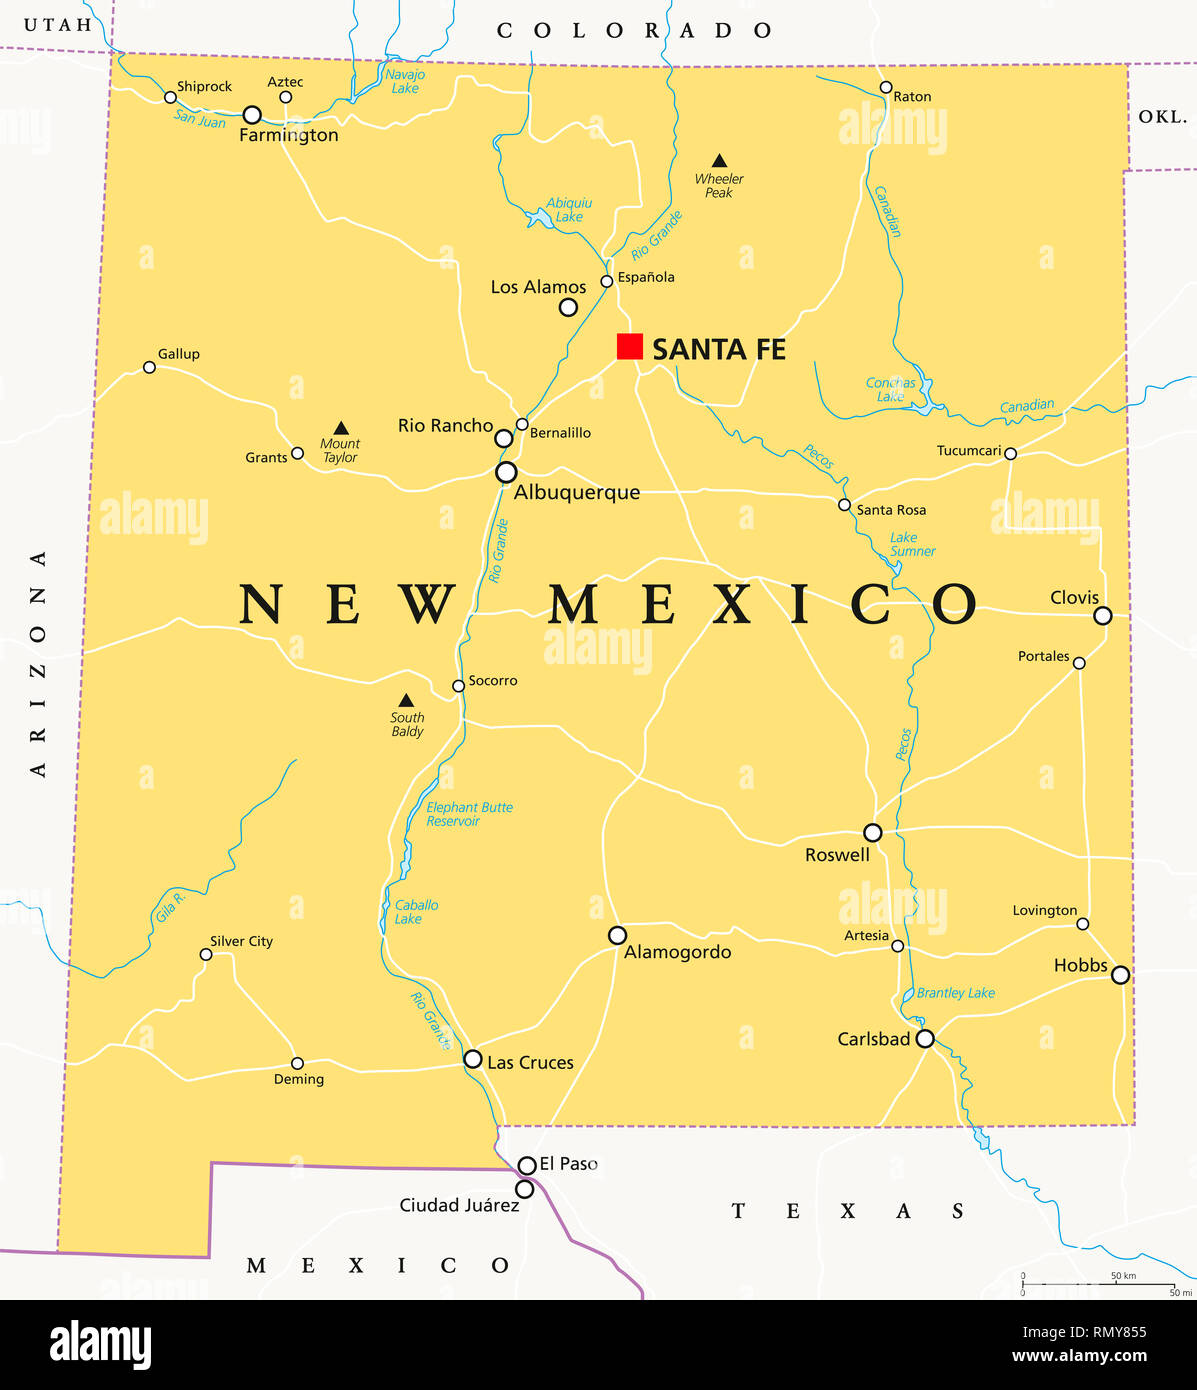 Nuevo México, mapa político, con la capital Santa Fe, fronteras, importantes ciudades, ríos y lagos. Estado en la región suroeste de Estados Unidos. Foto de stock